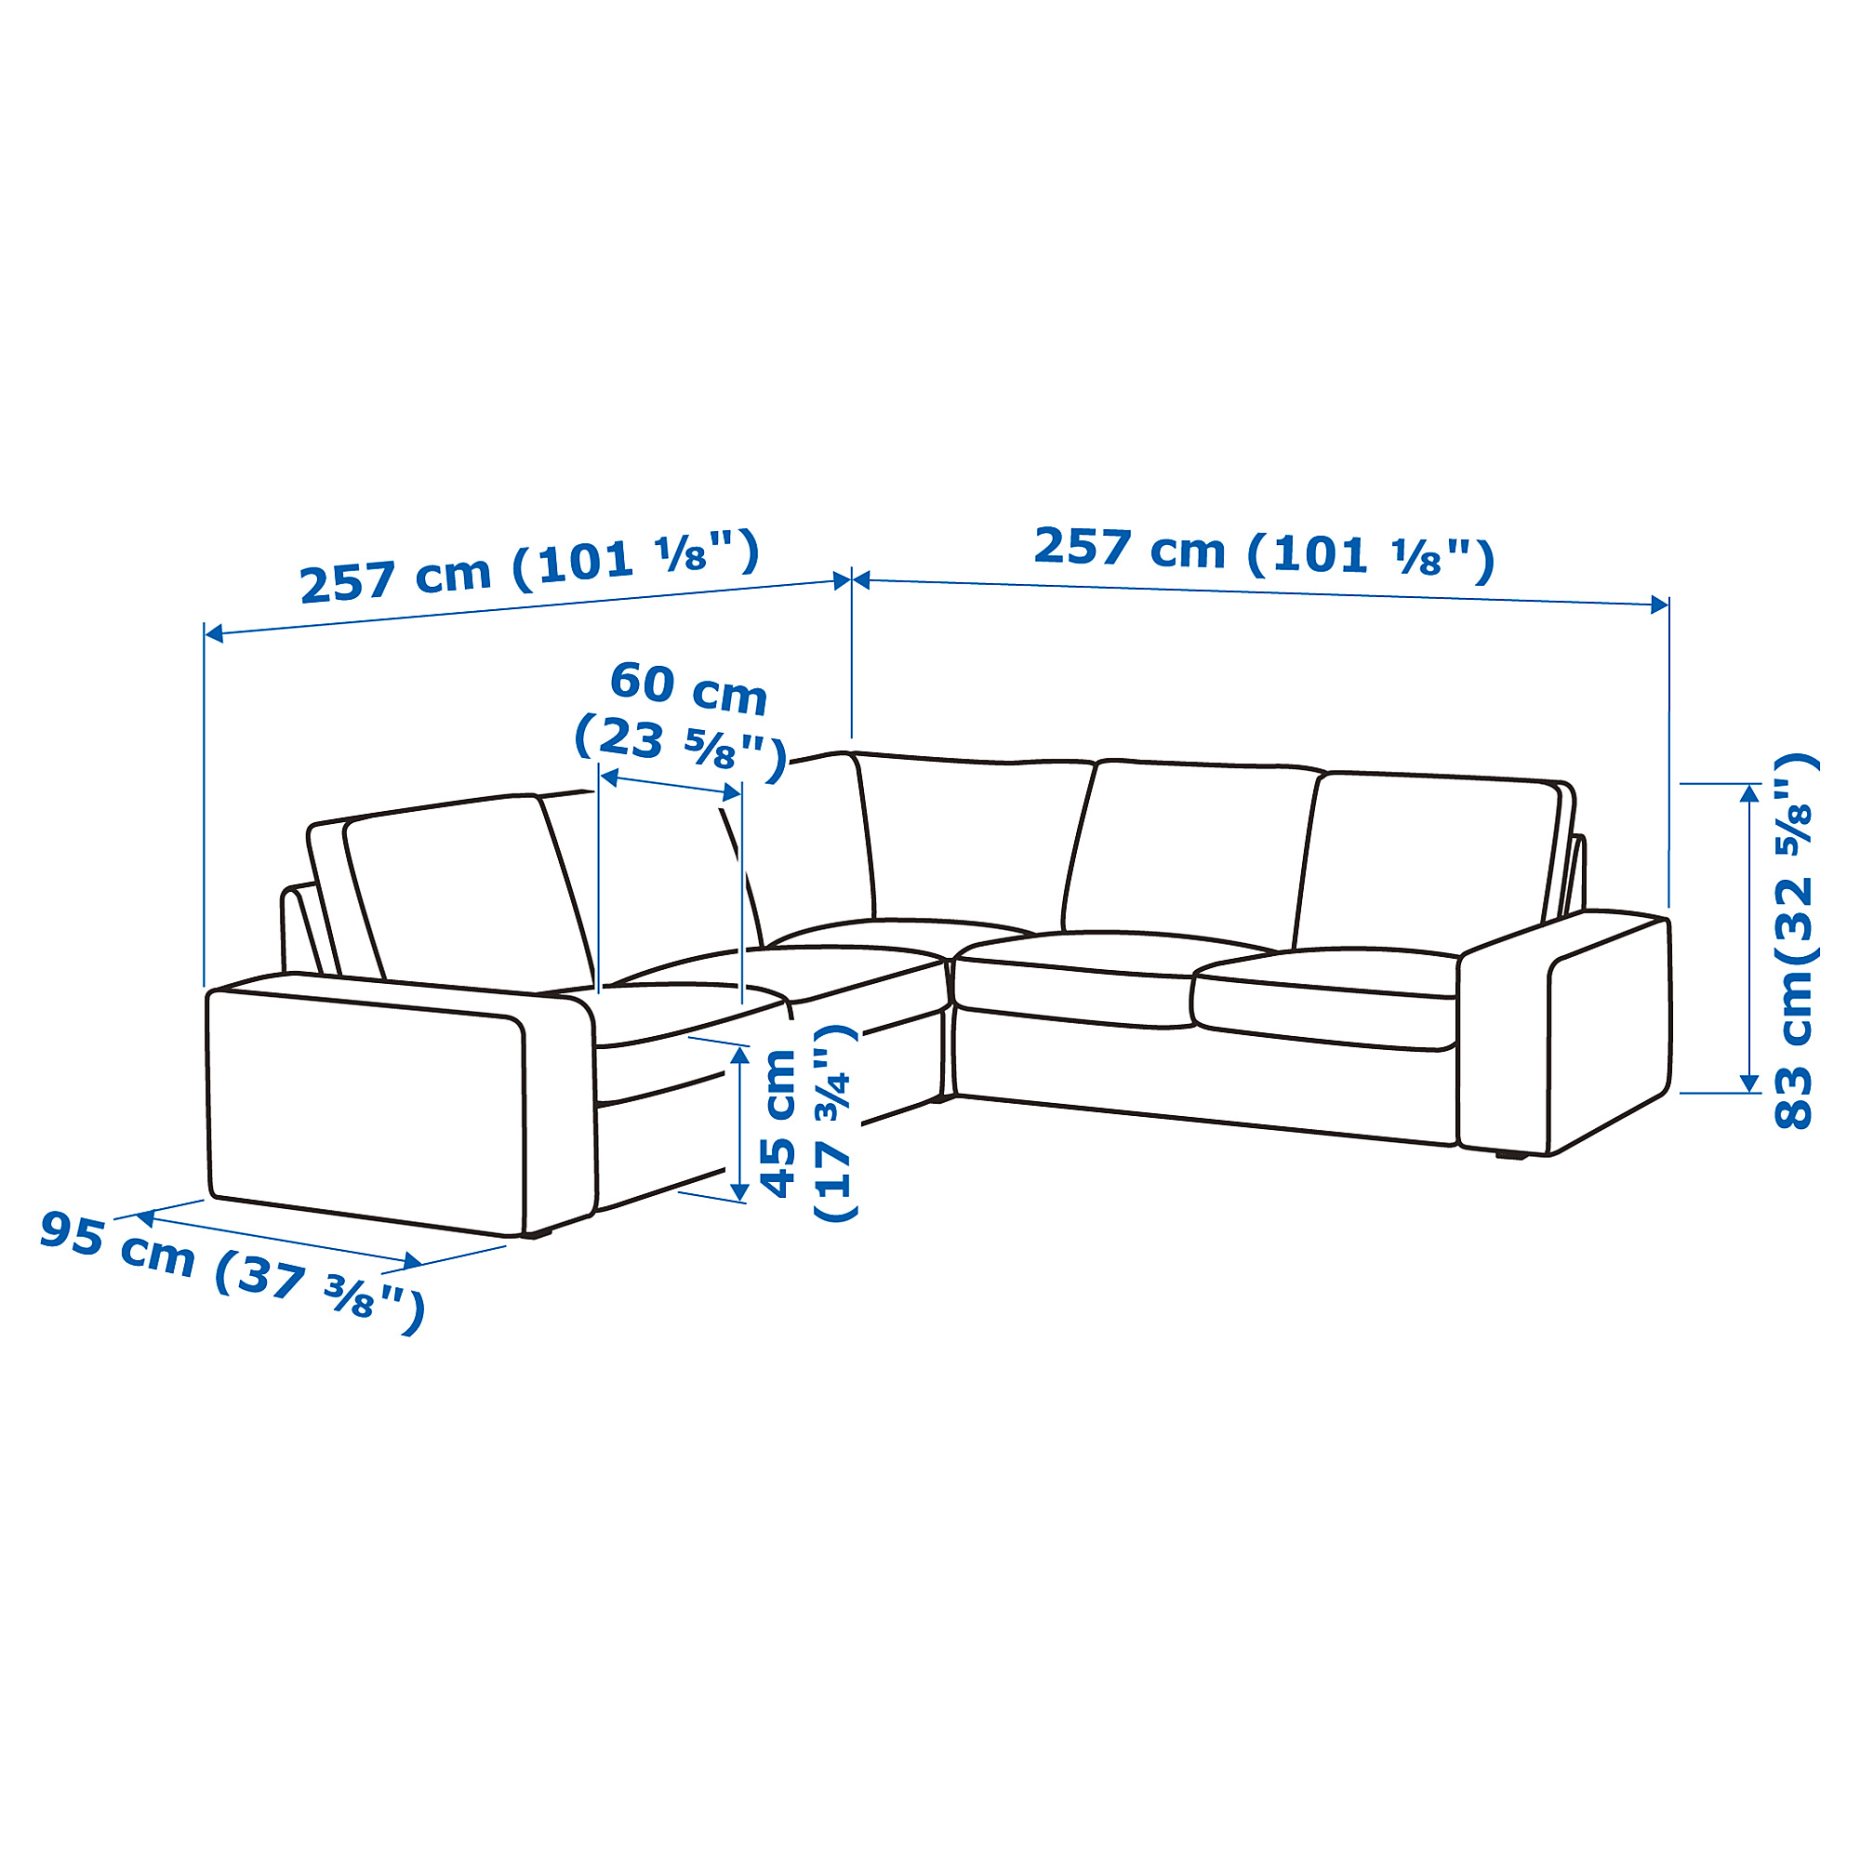 KIVIK, corner sofa, 4-seat, 994.430.13